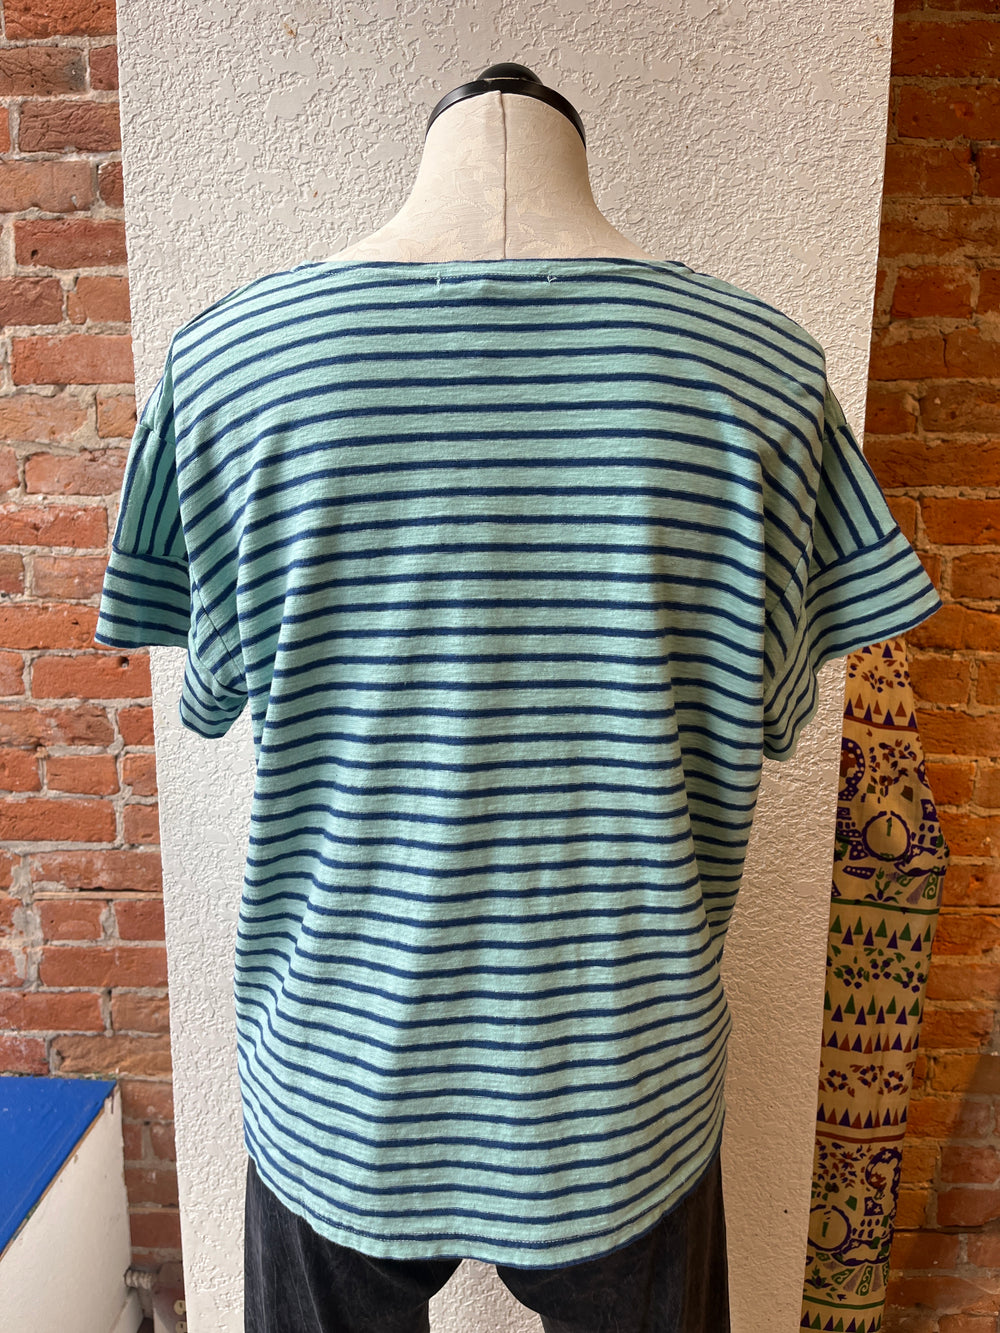 Cut Loose t-shirt, blue stripe linen blend short sleeve